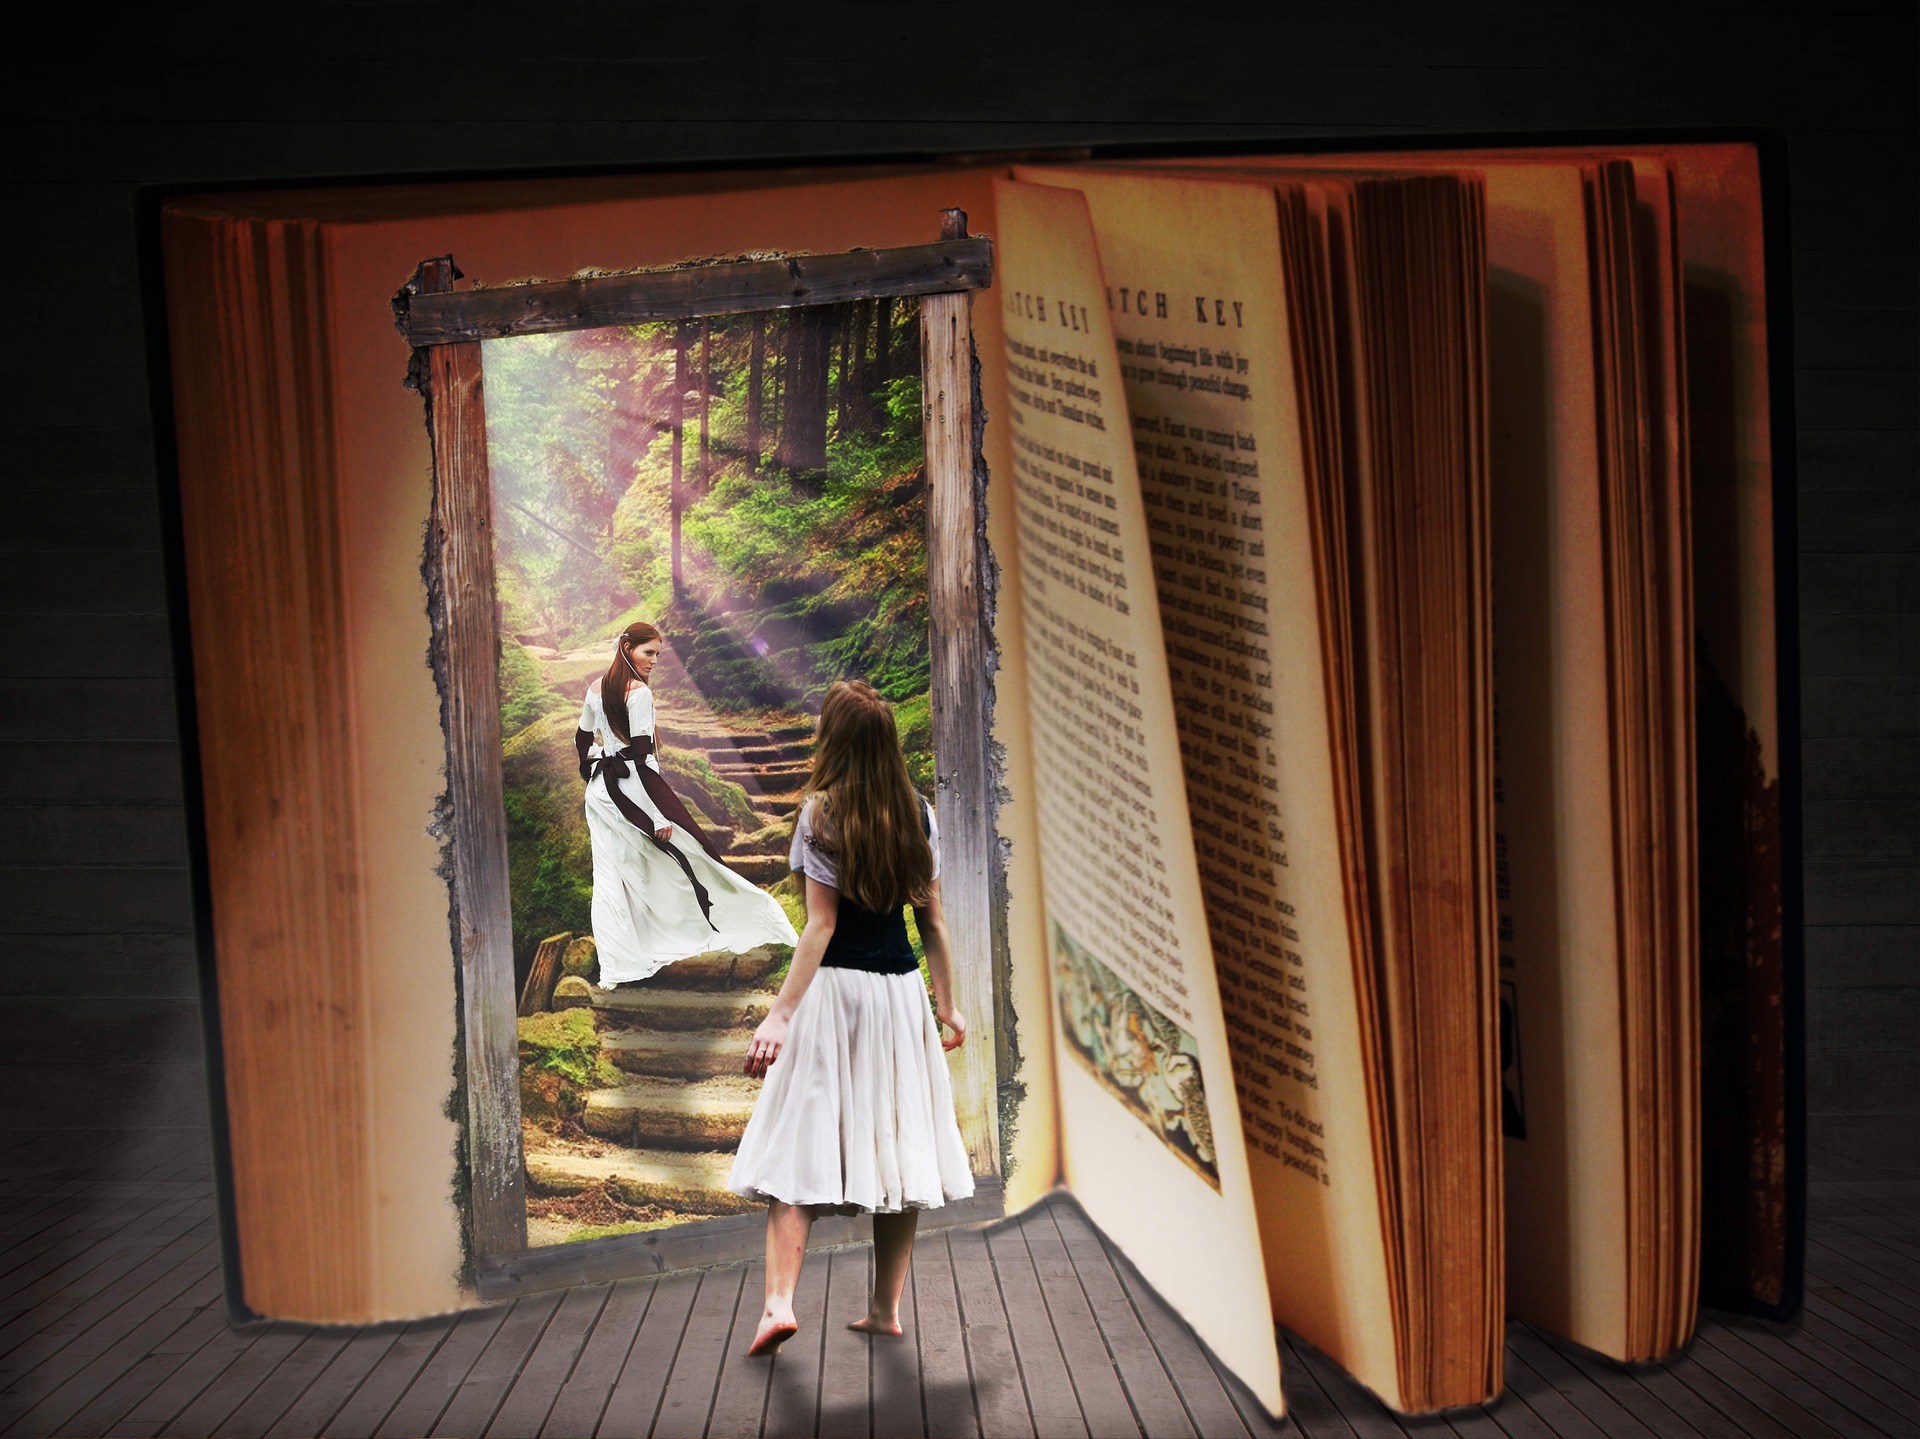 Дверь в другой мир аудиокнига. Волшебная книга. Сказочная дверь в библиотеке. Книга дверь в мир. Книга дверь в Волшебный мир.